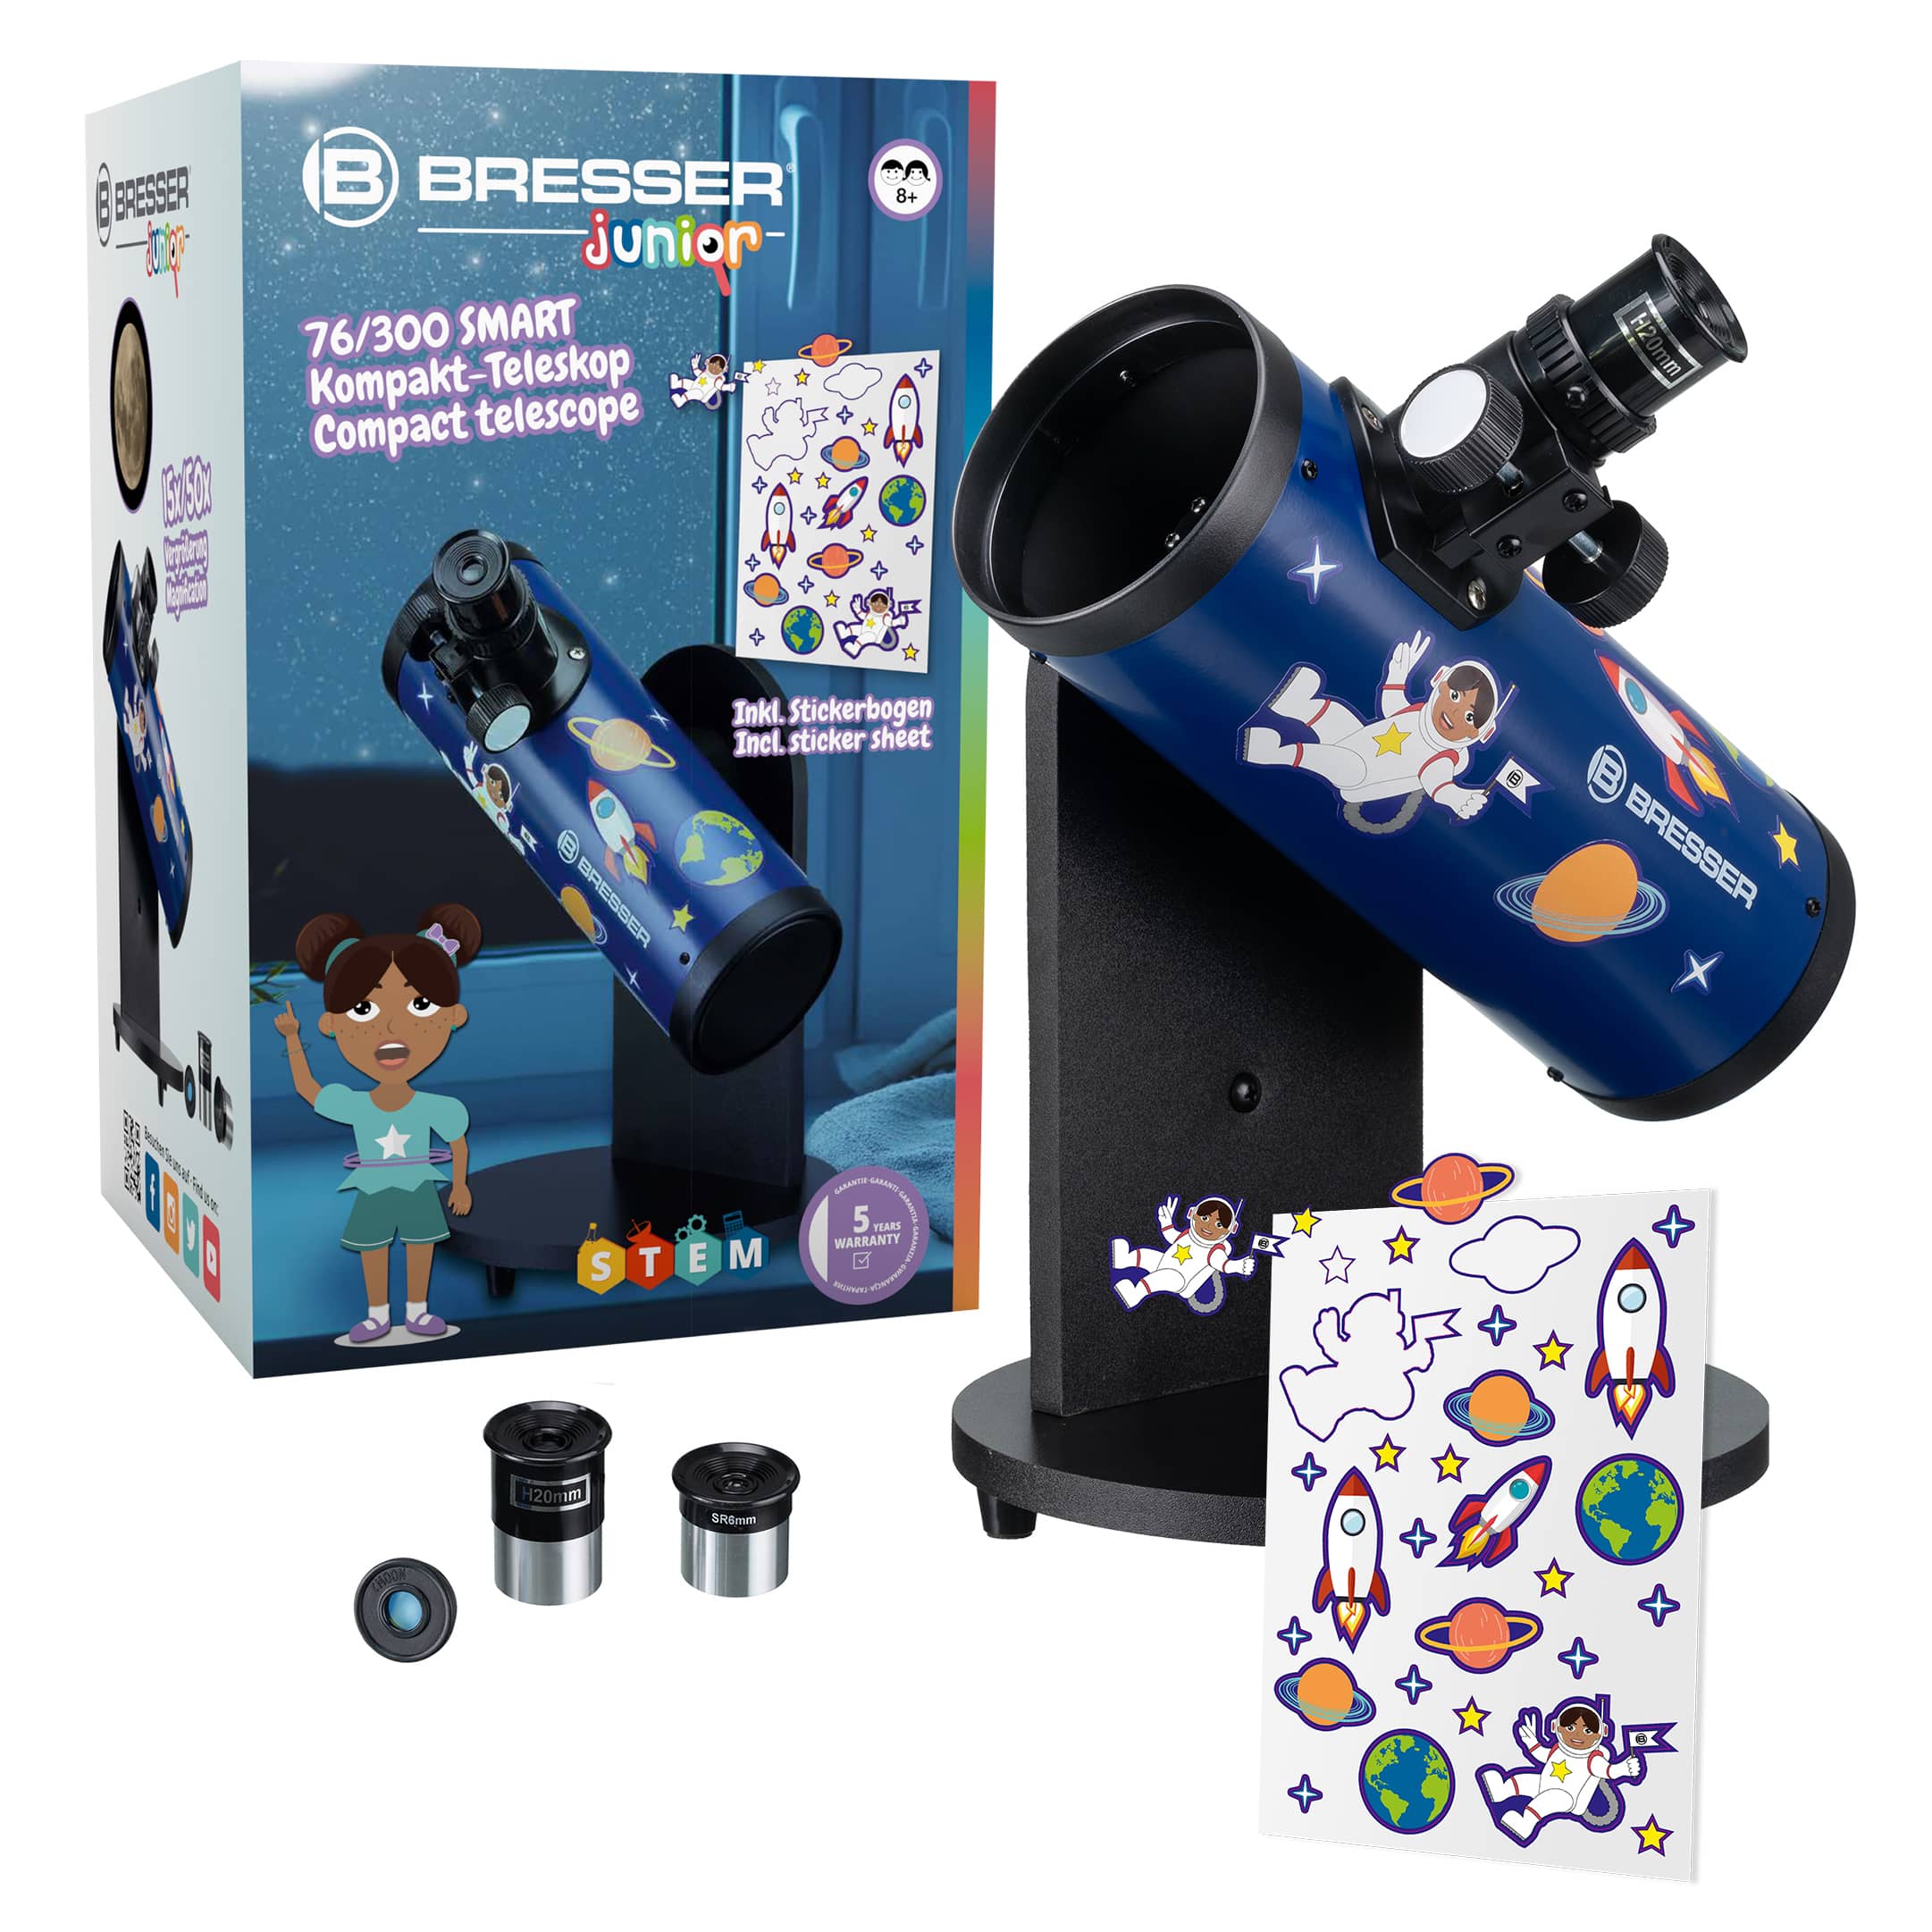   Ci si può avventurare con entusiasmo nell'astronomia con questo telescopio per bambini facile da usare, che include 2 oculari e un filtro lunare  